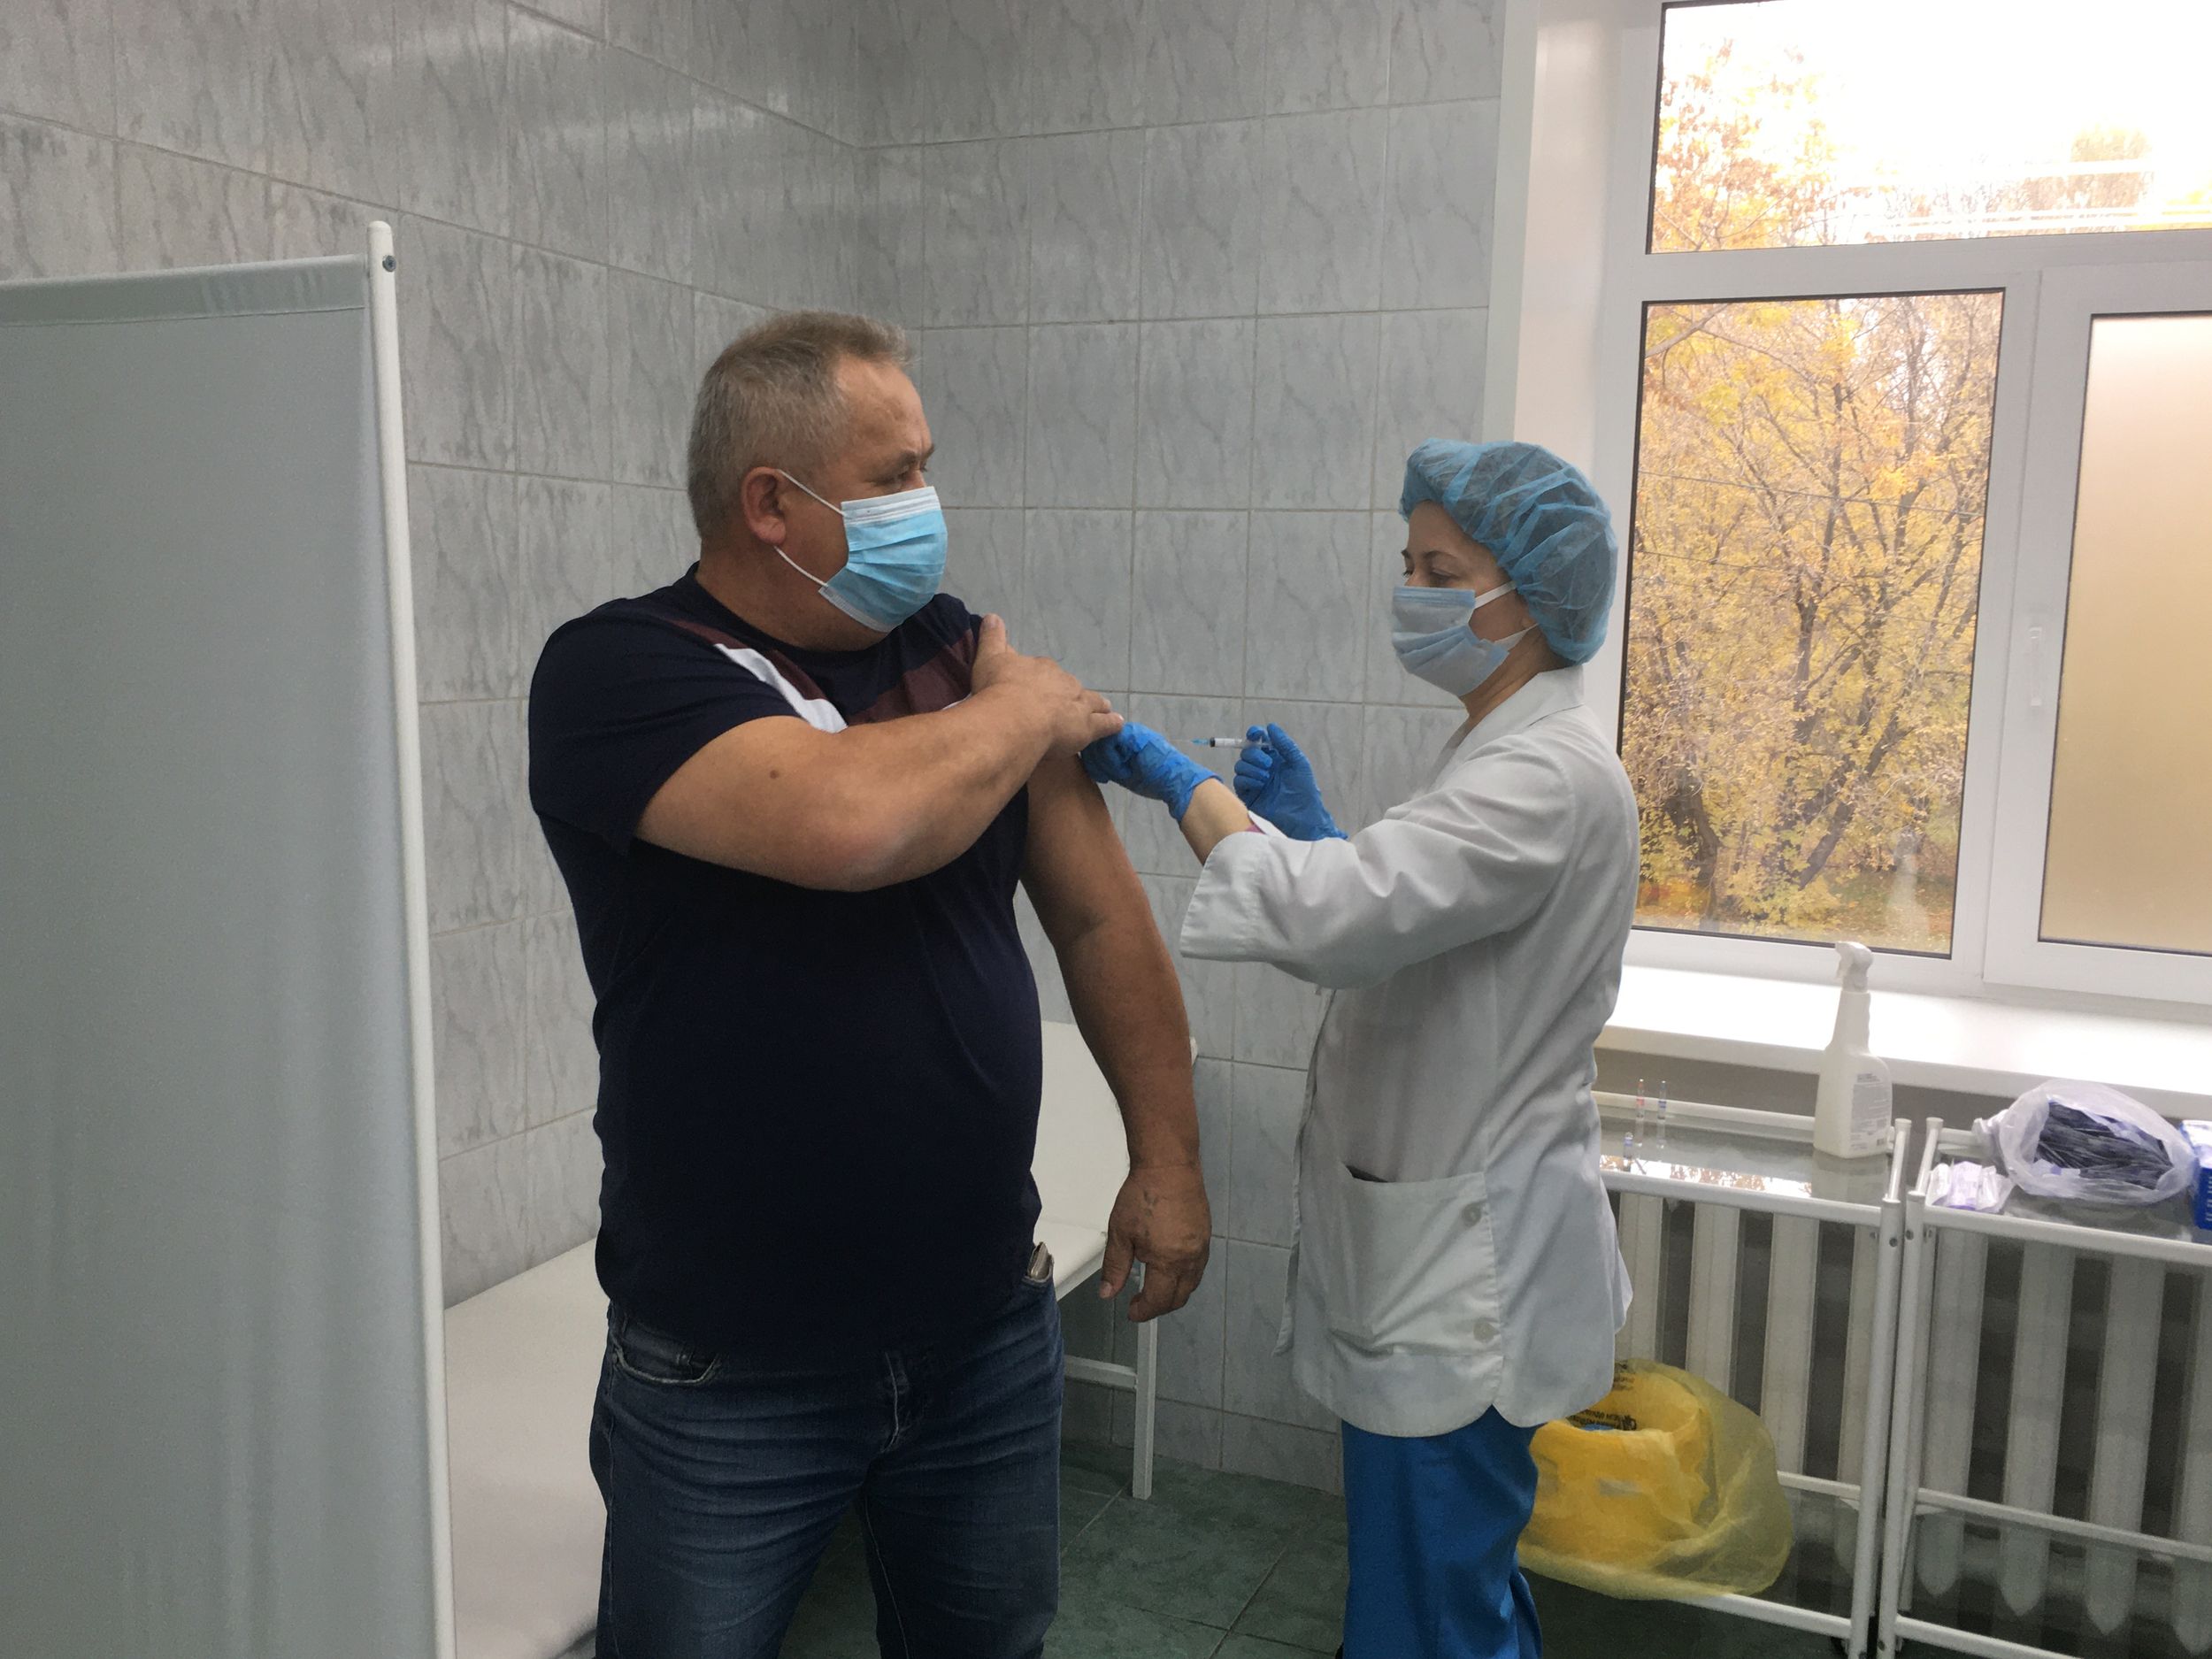 

В Ижевске из-за большой нагрузки на медиков приостановили вакцинацию от коронавируса в мобильных пунктах

